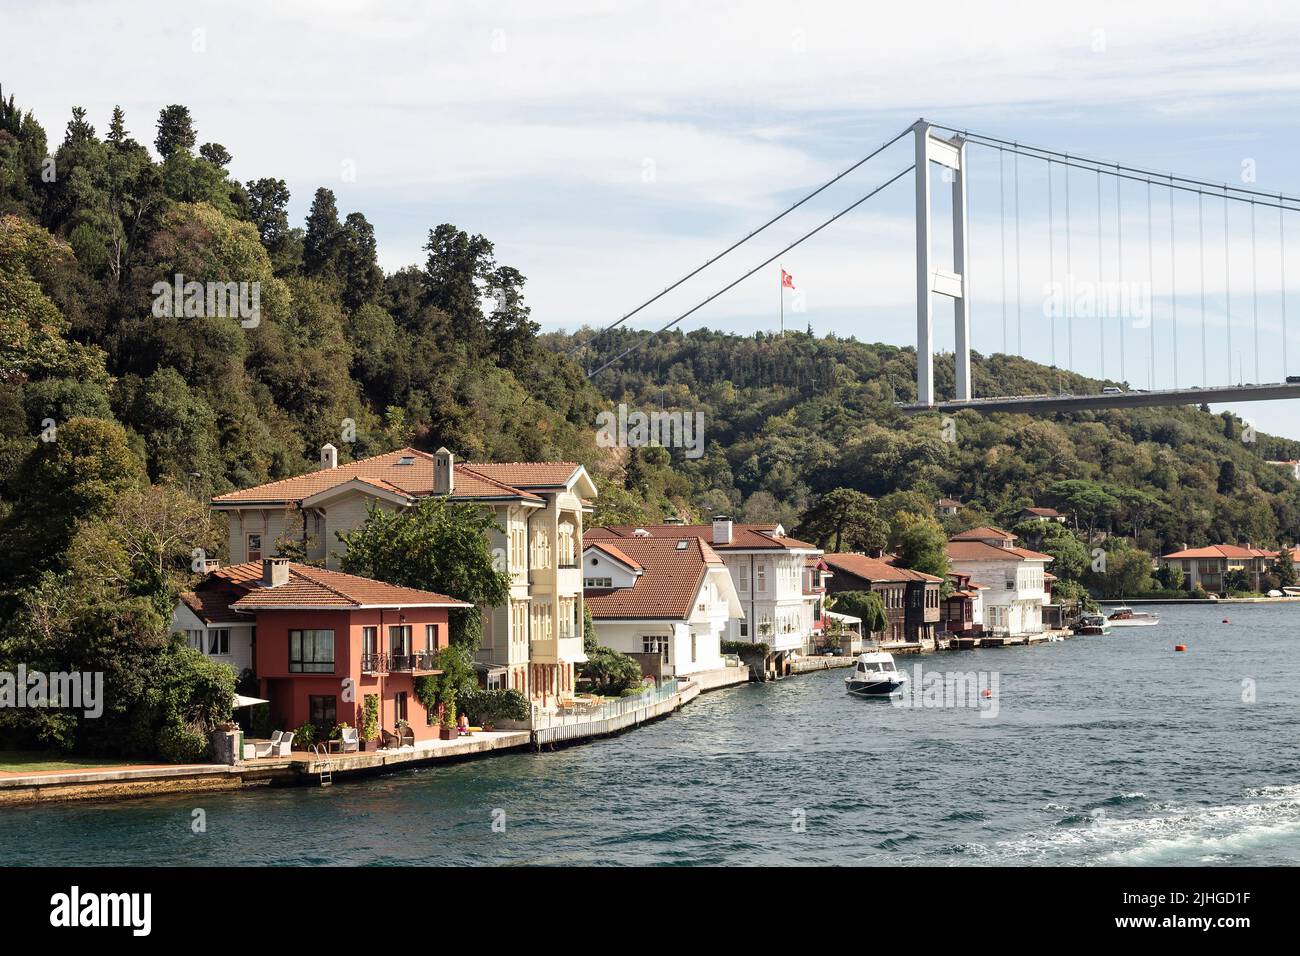 Vista delle dimore storiche e tradizionali del Bosforo nell'area di Kanica, nella parte asiatica di Istanbul. Barche e ponte FSM sono anche in vista. È un su Foto Stock